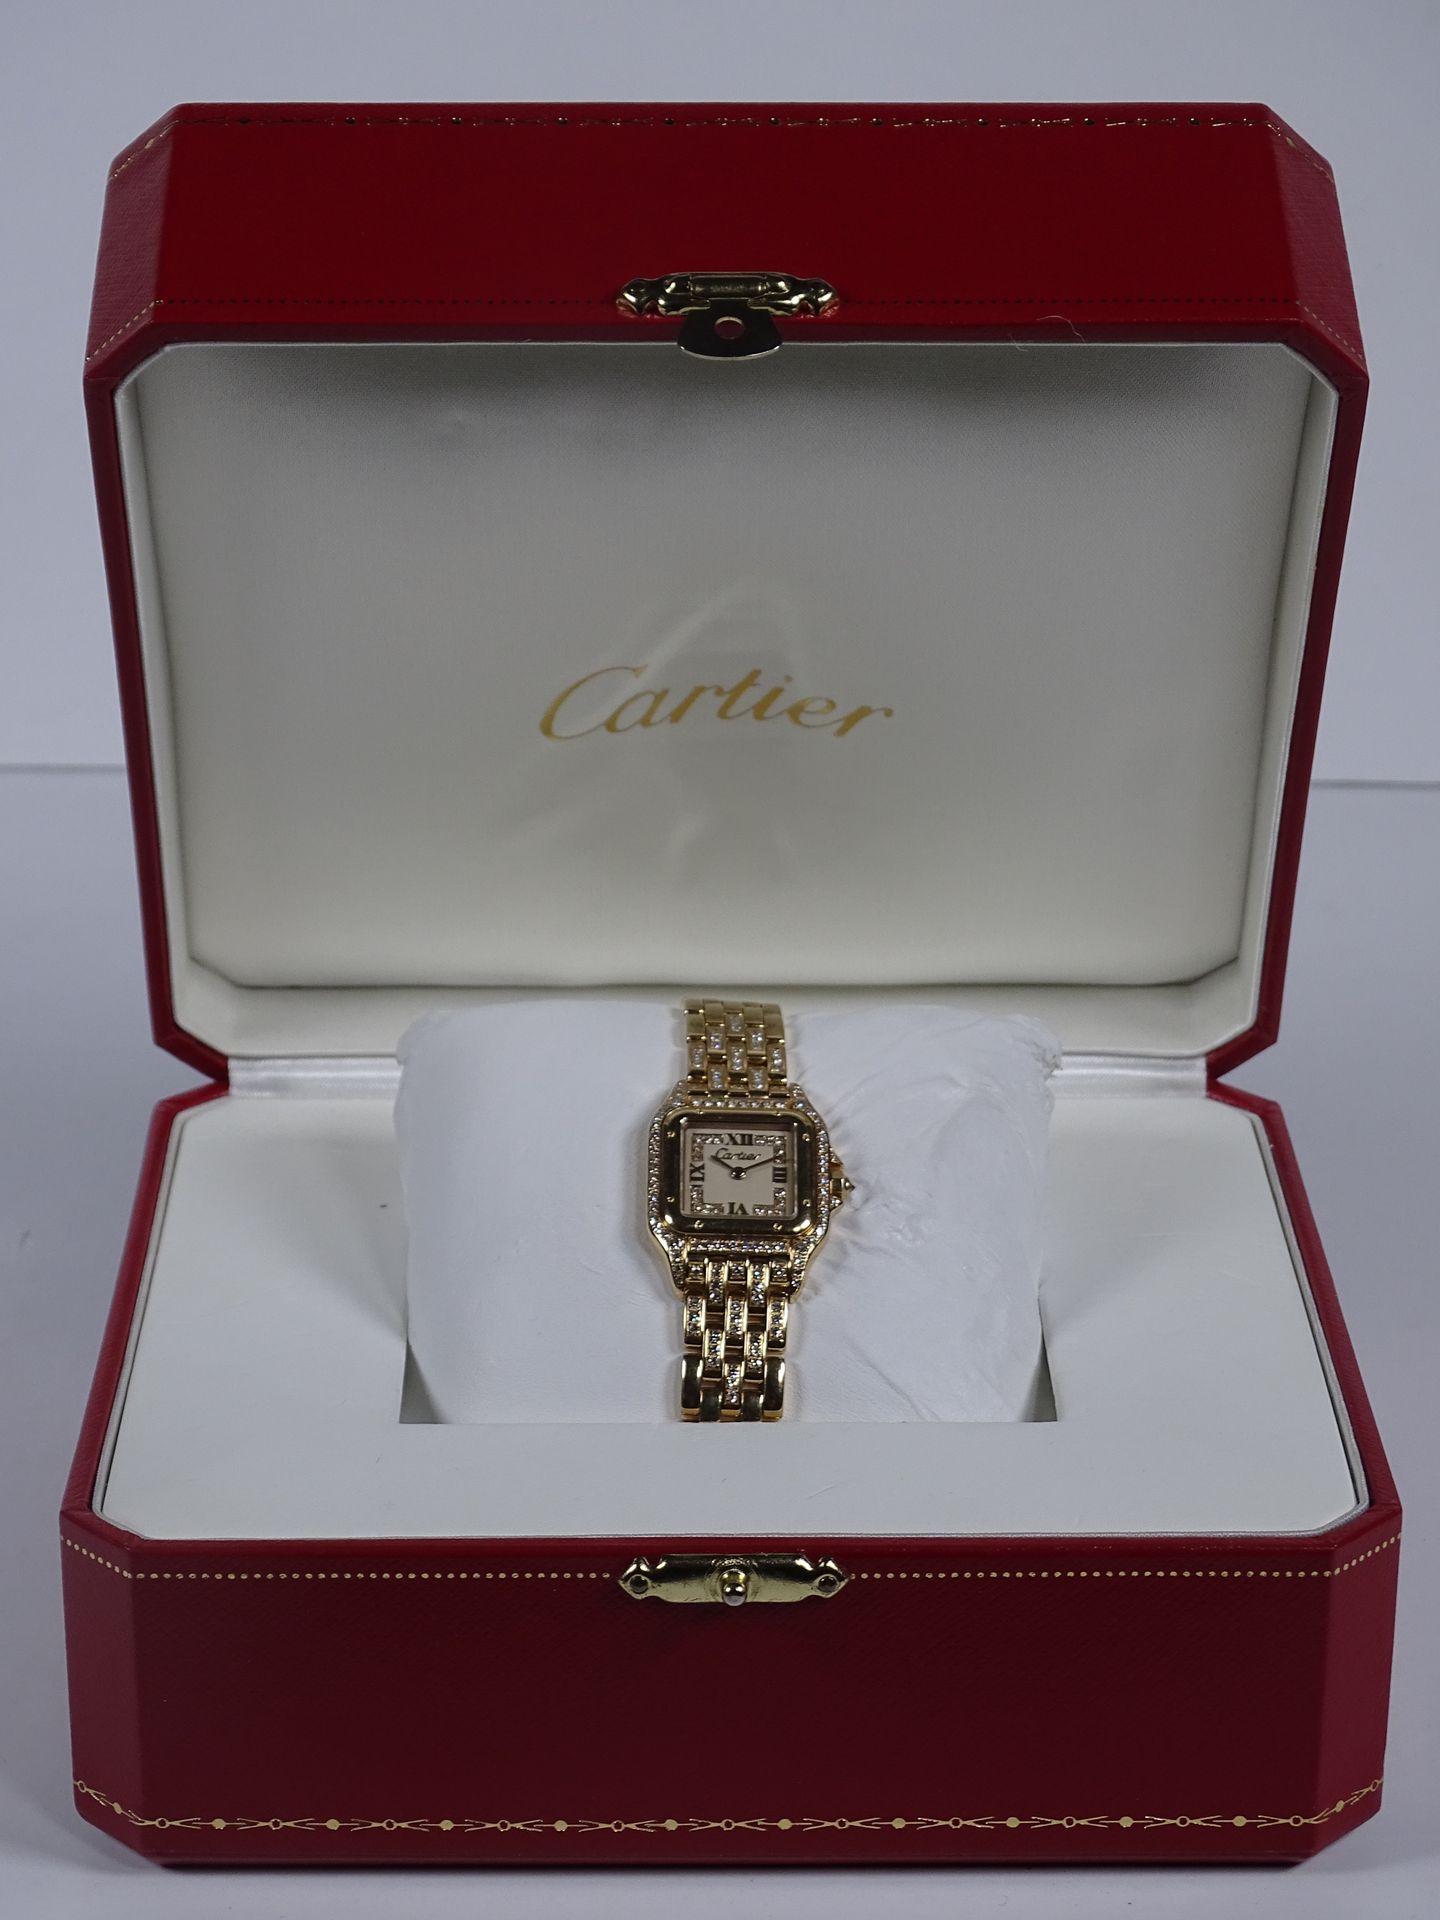 CARTIER Reloj de pulsera de señora en oro.

Modelo Panthère de la Casa Cartier.
&hellip;